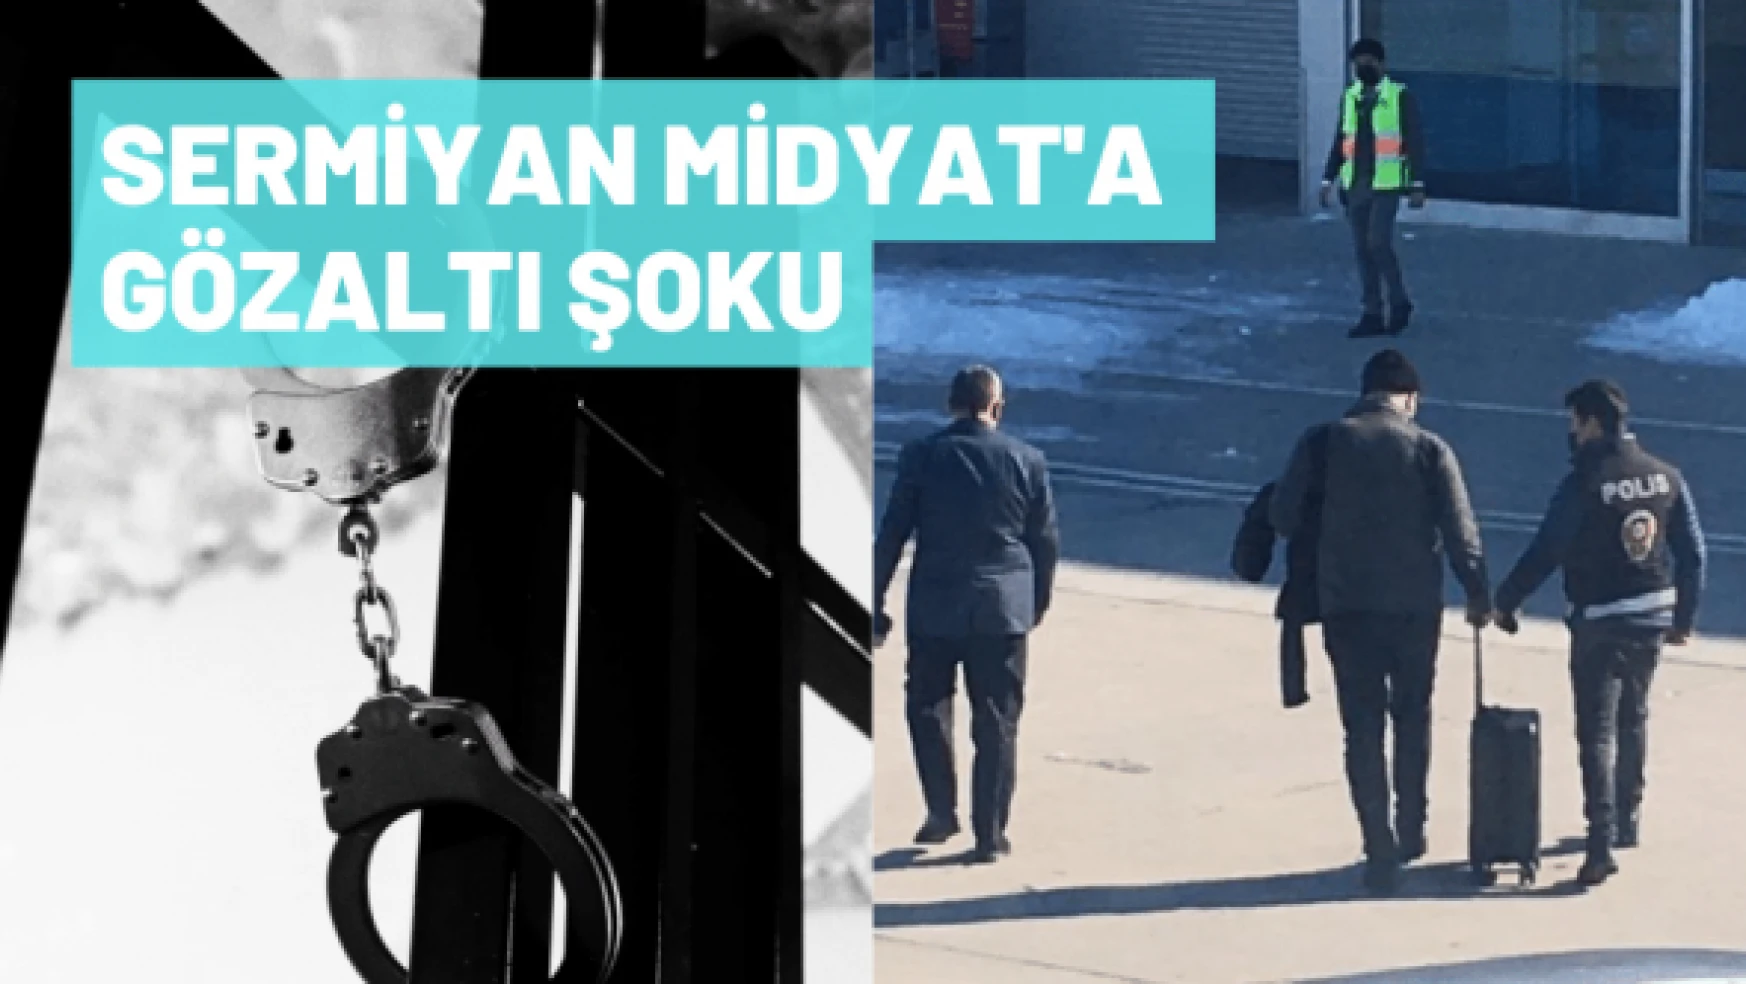 Sermiyan Midyat Malatya'da gözaltına alındı